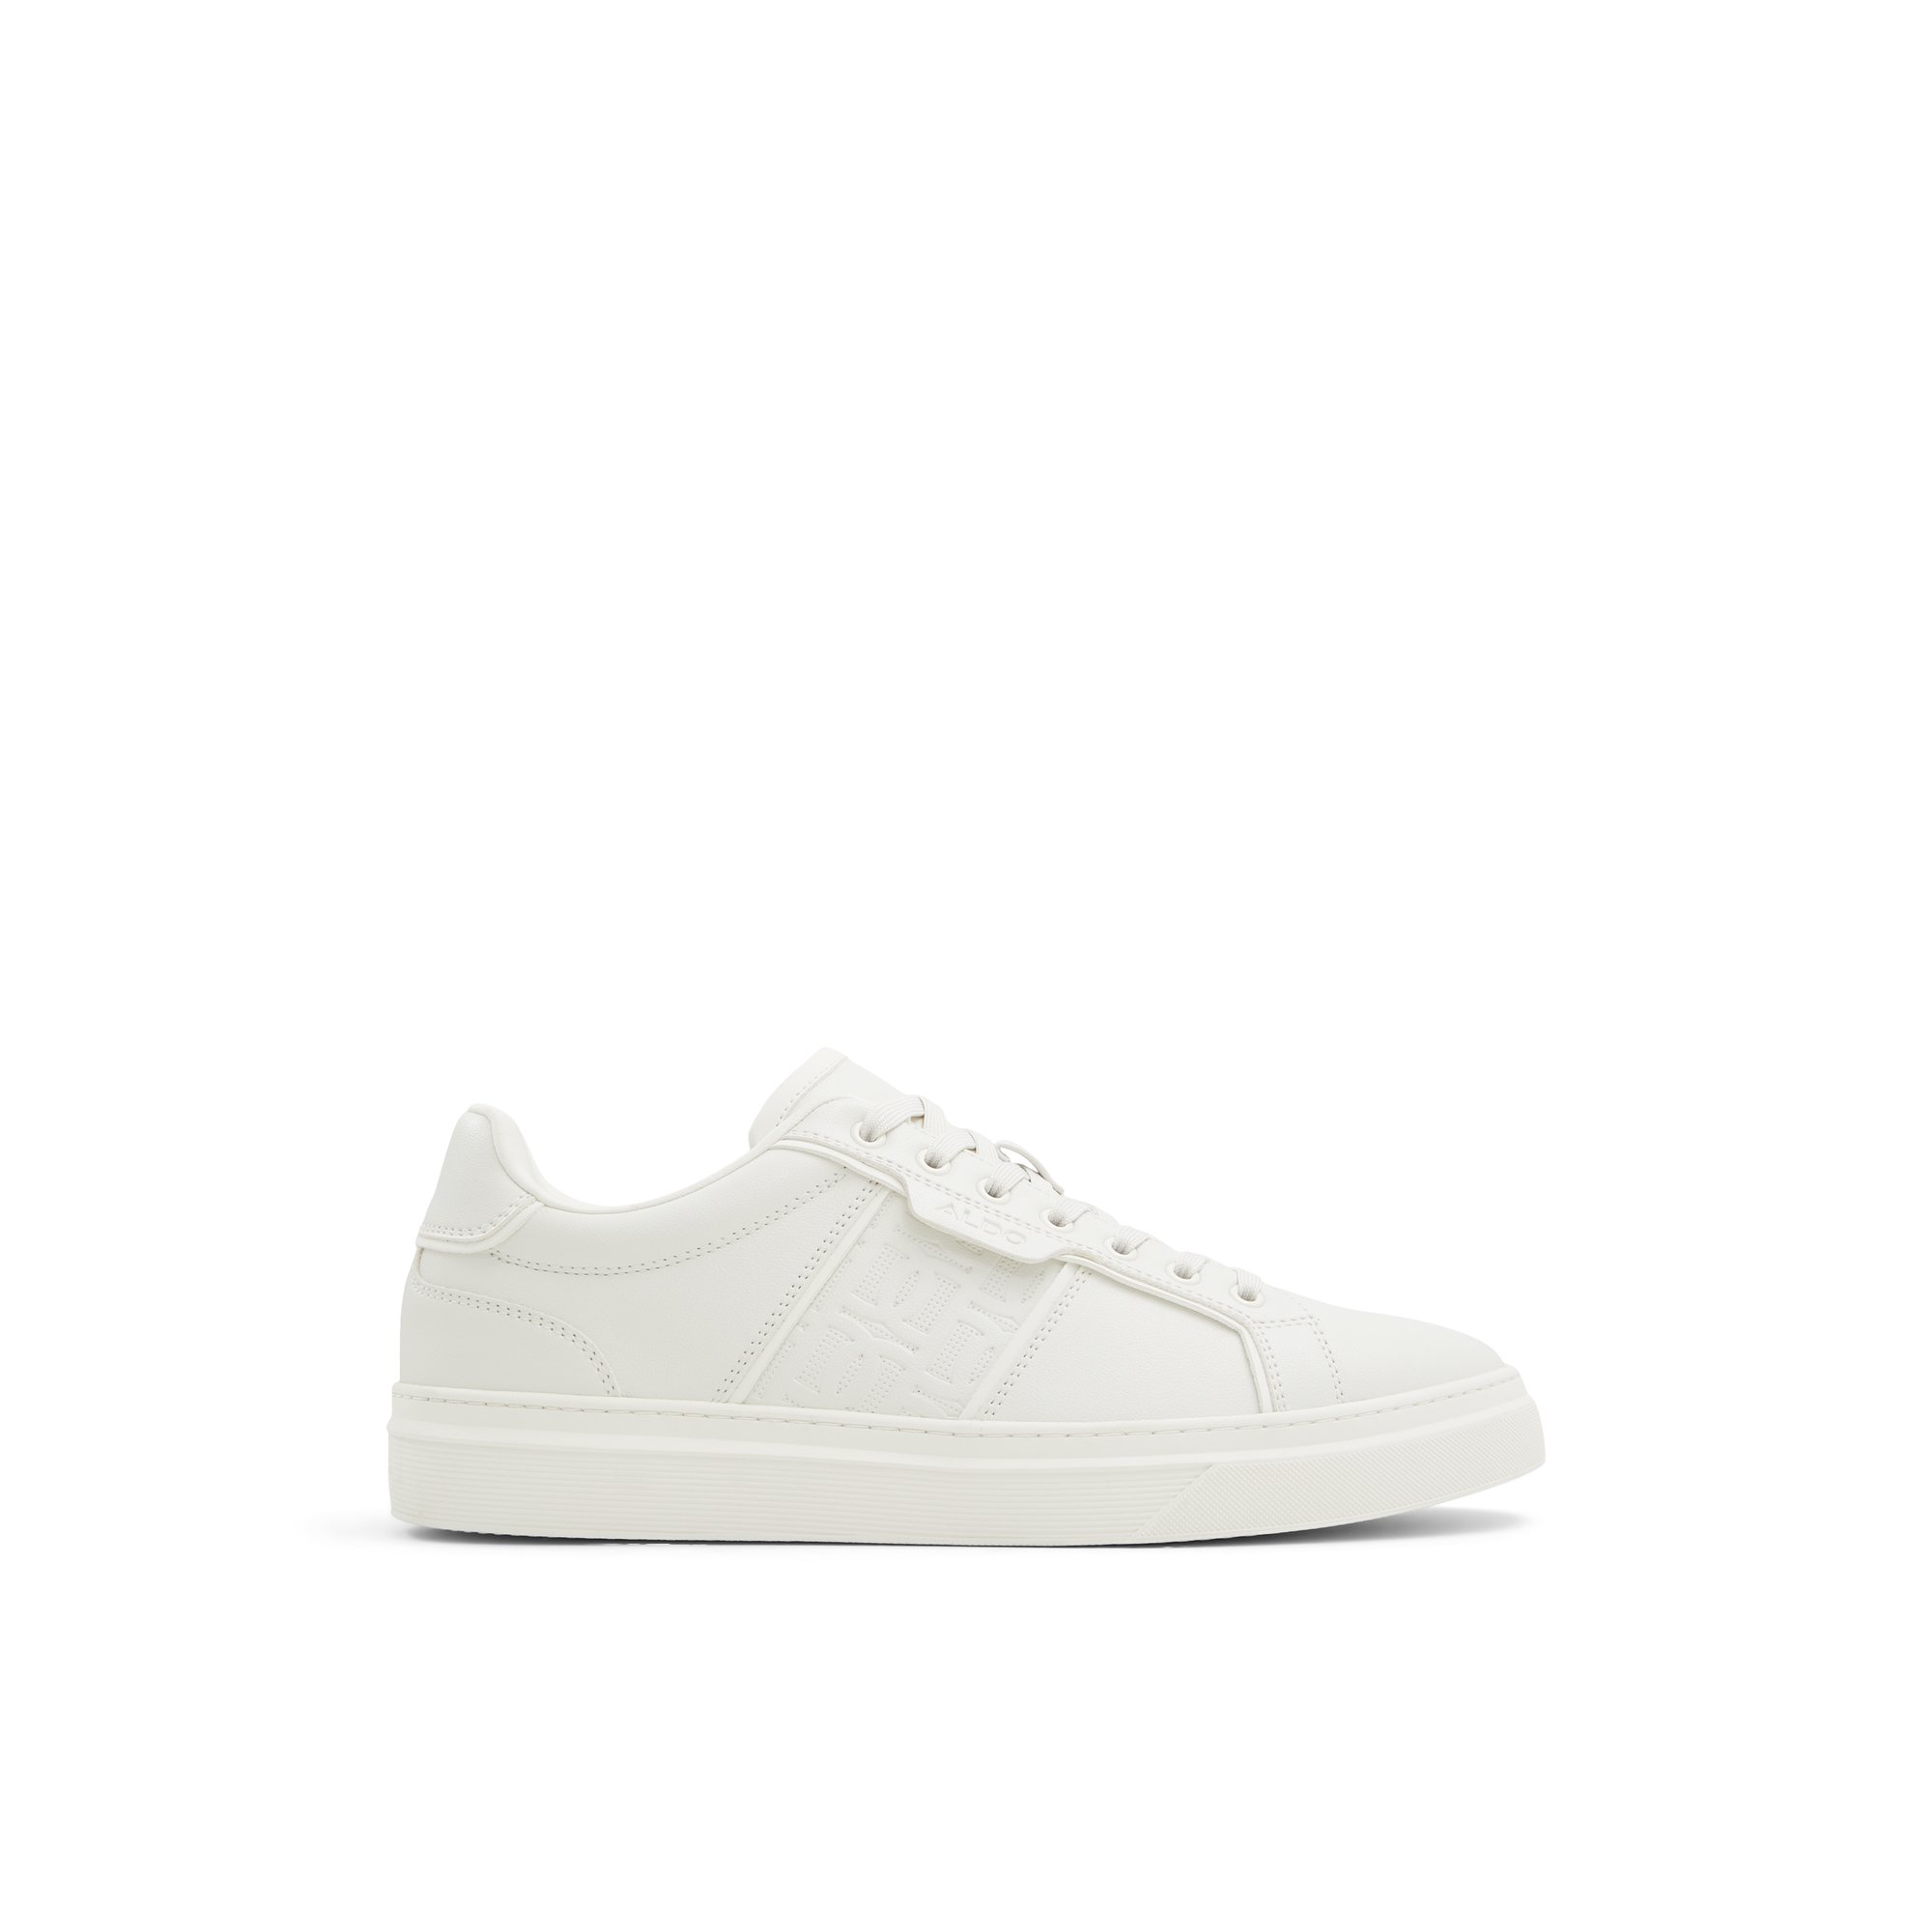 ALDO Courtline - Men's Low Top Sneakers - White